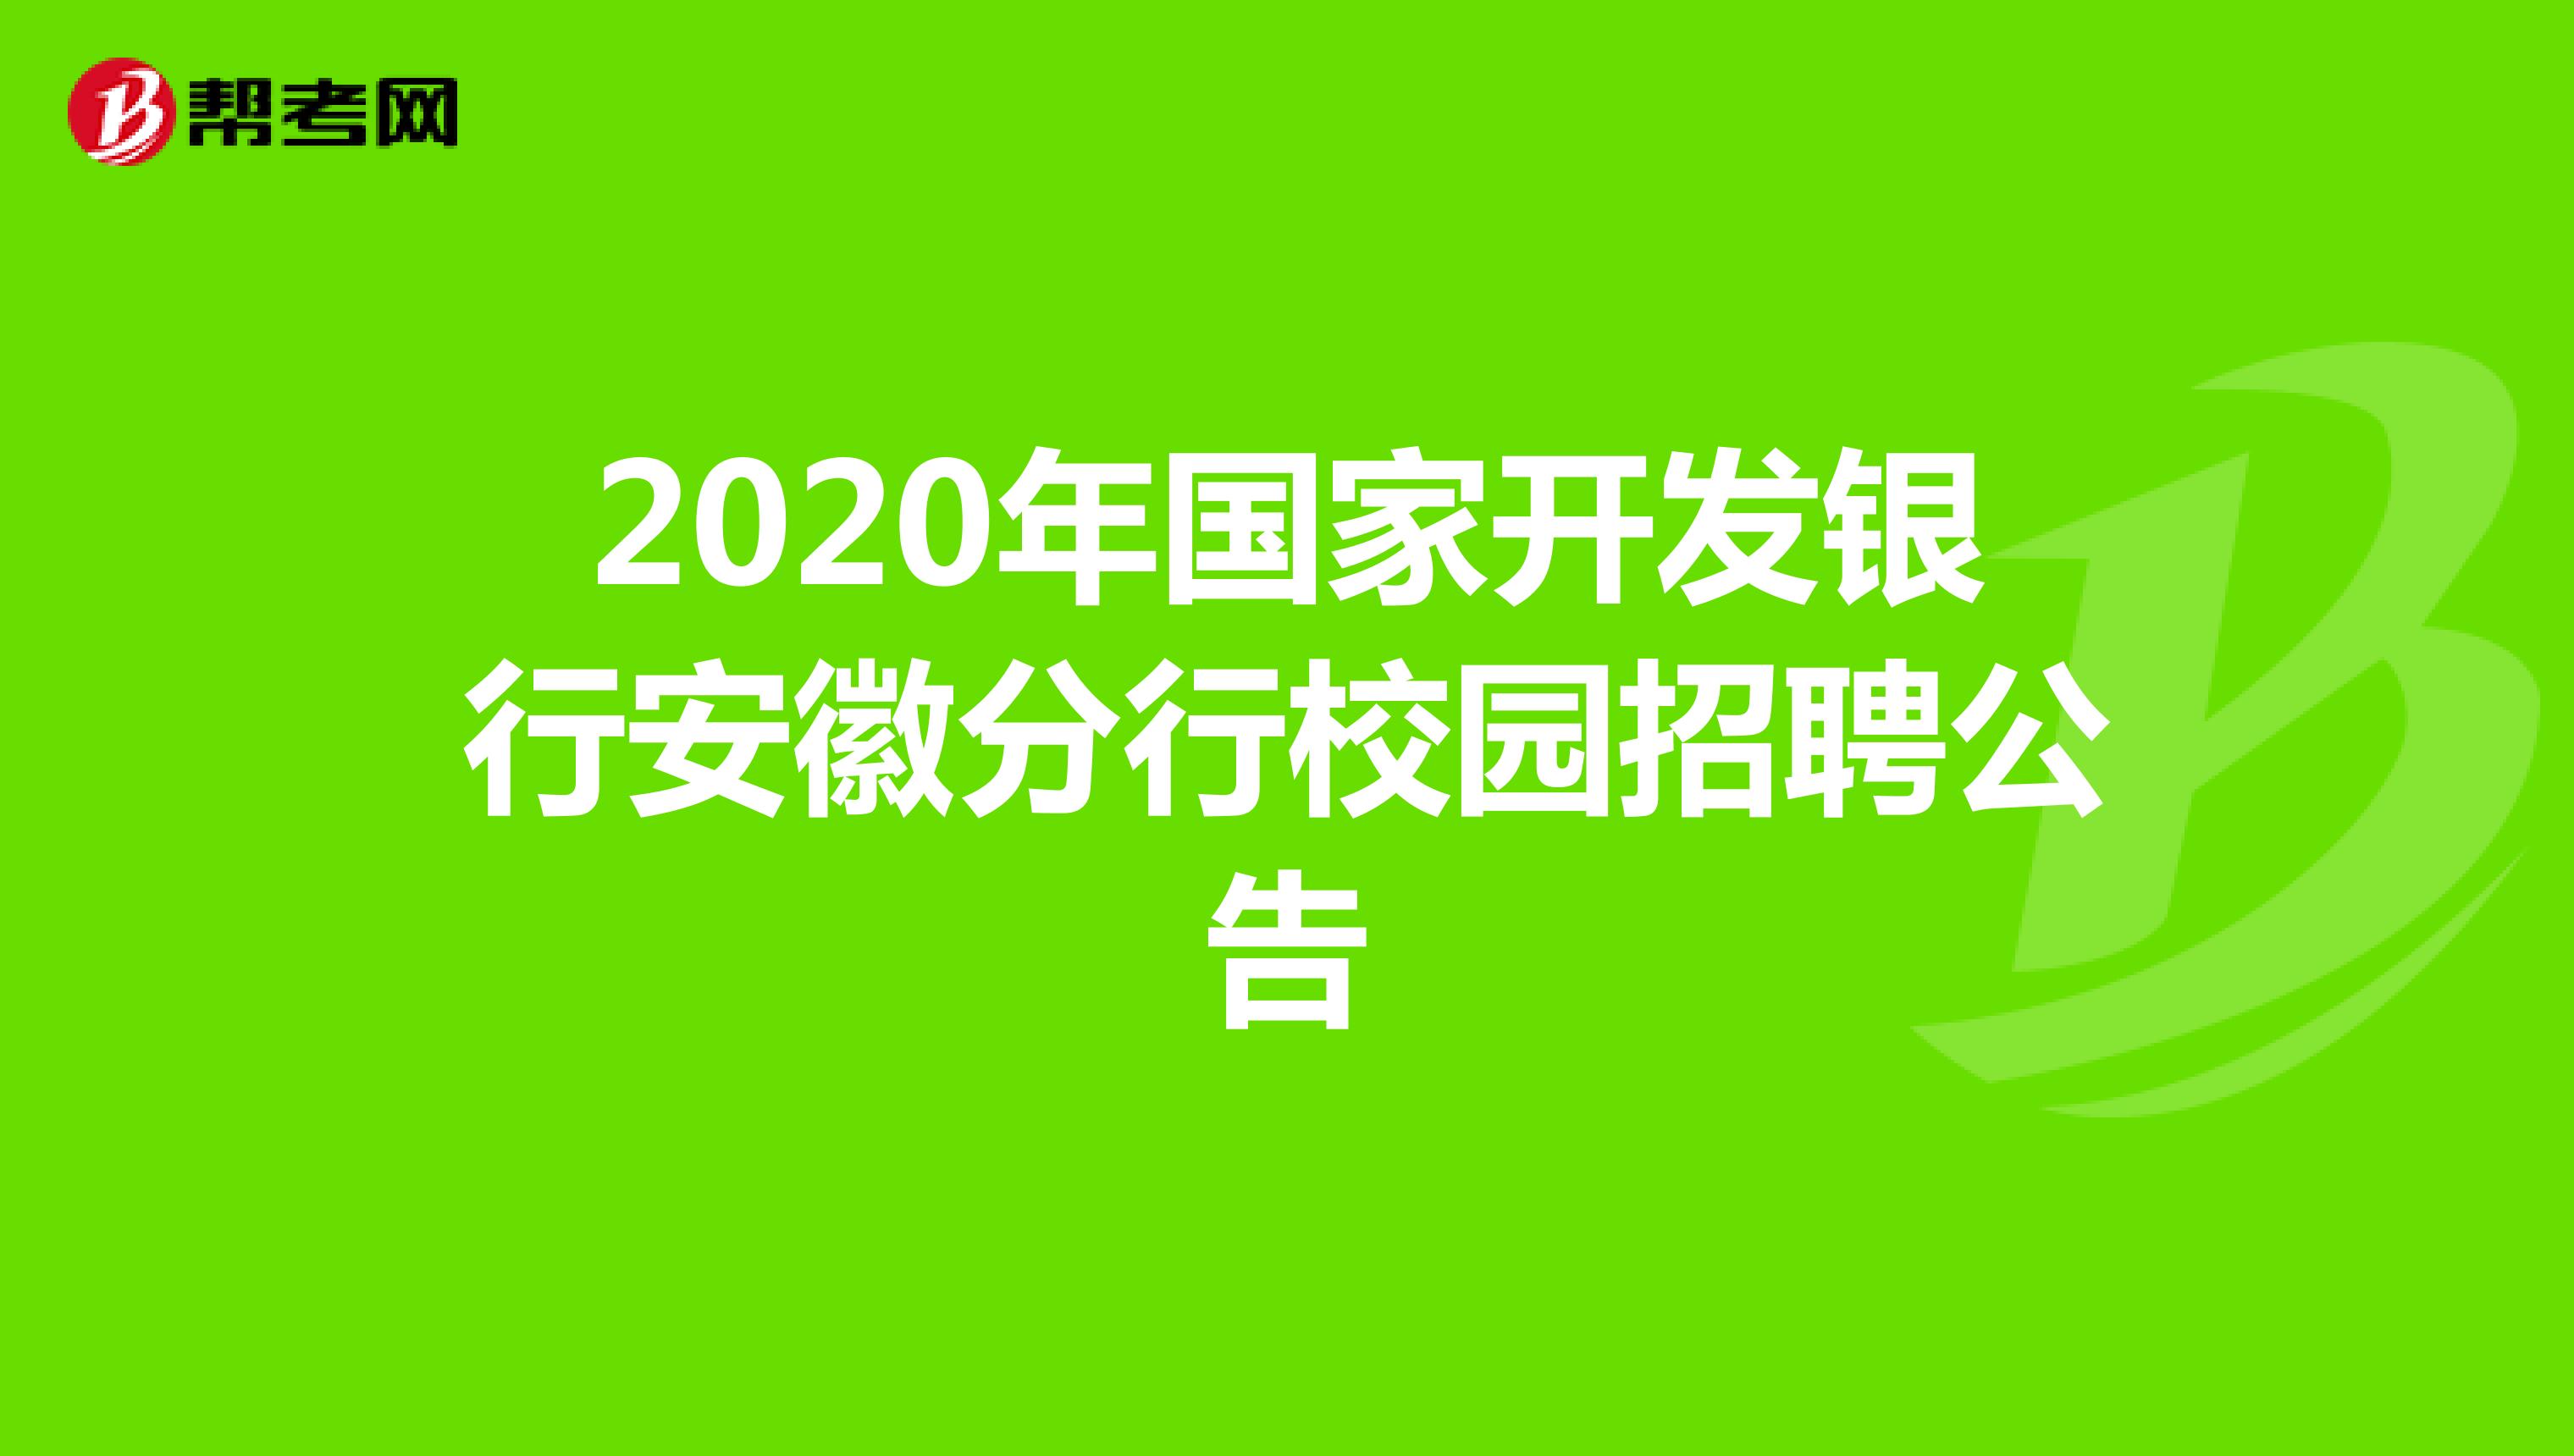 2020年国家开发银行安徽分行校园招聘公告